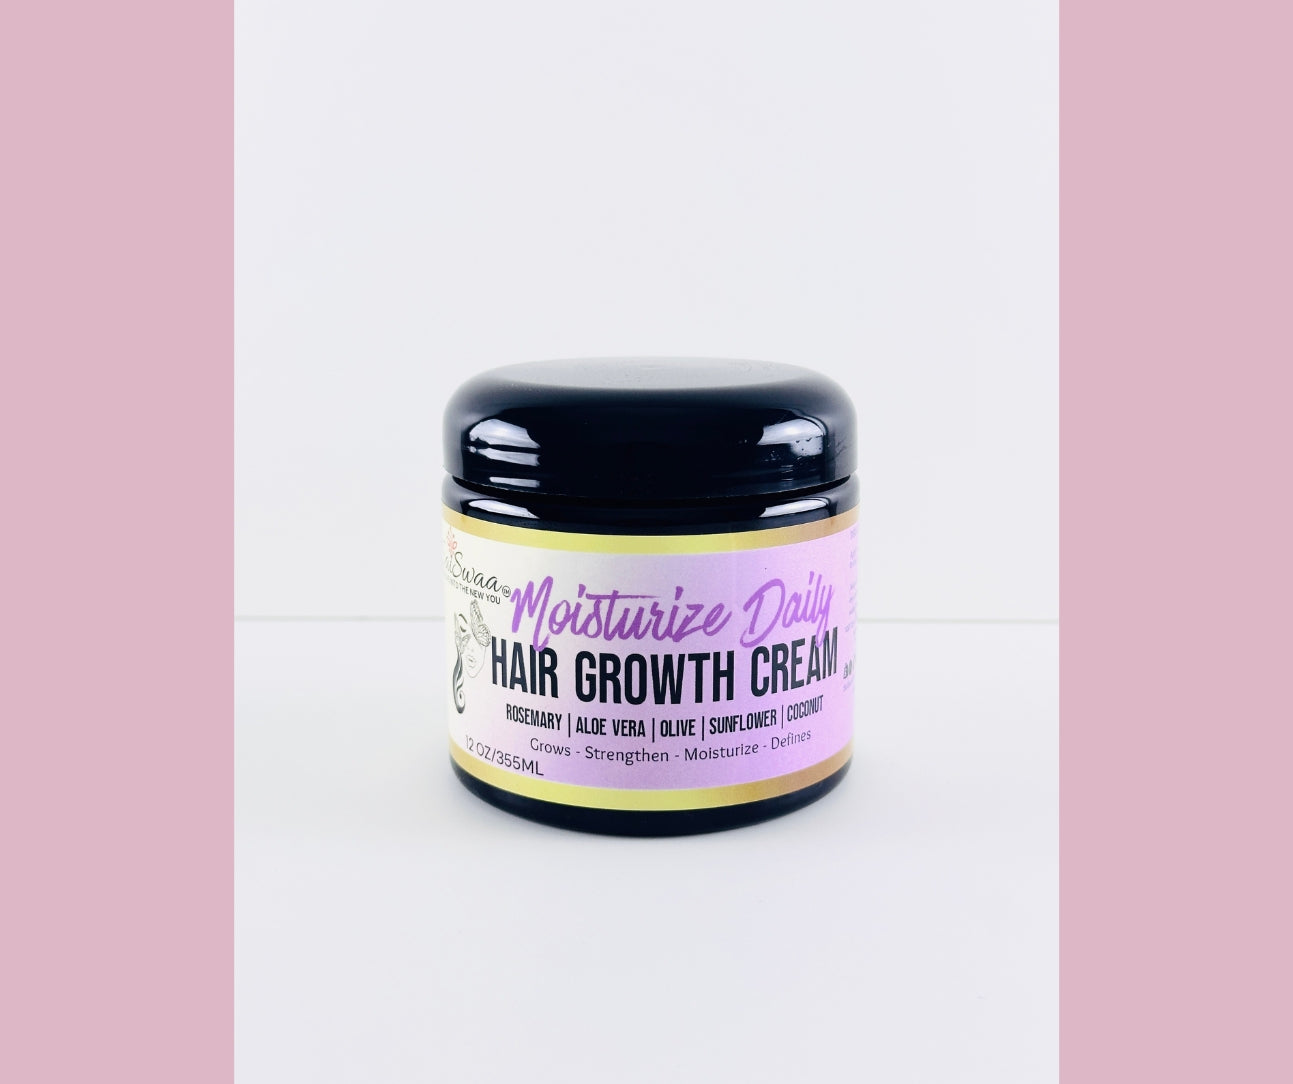 Moisturize Daily Hair Growth Cream